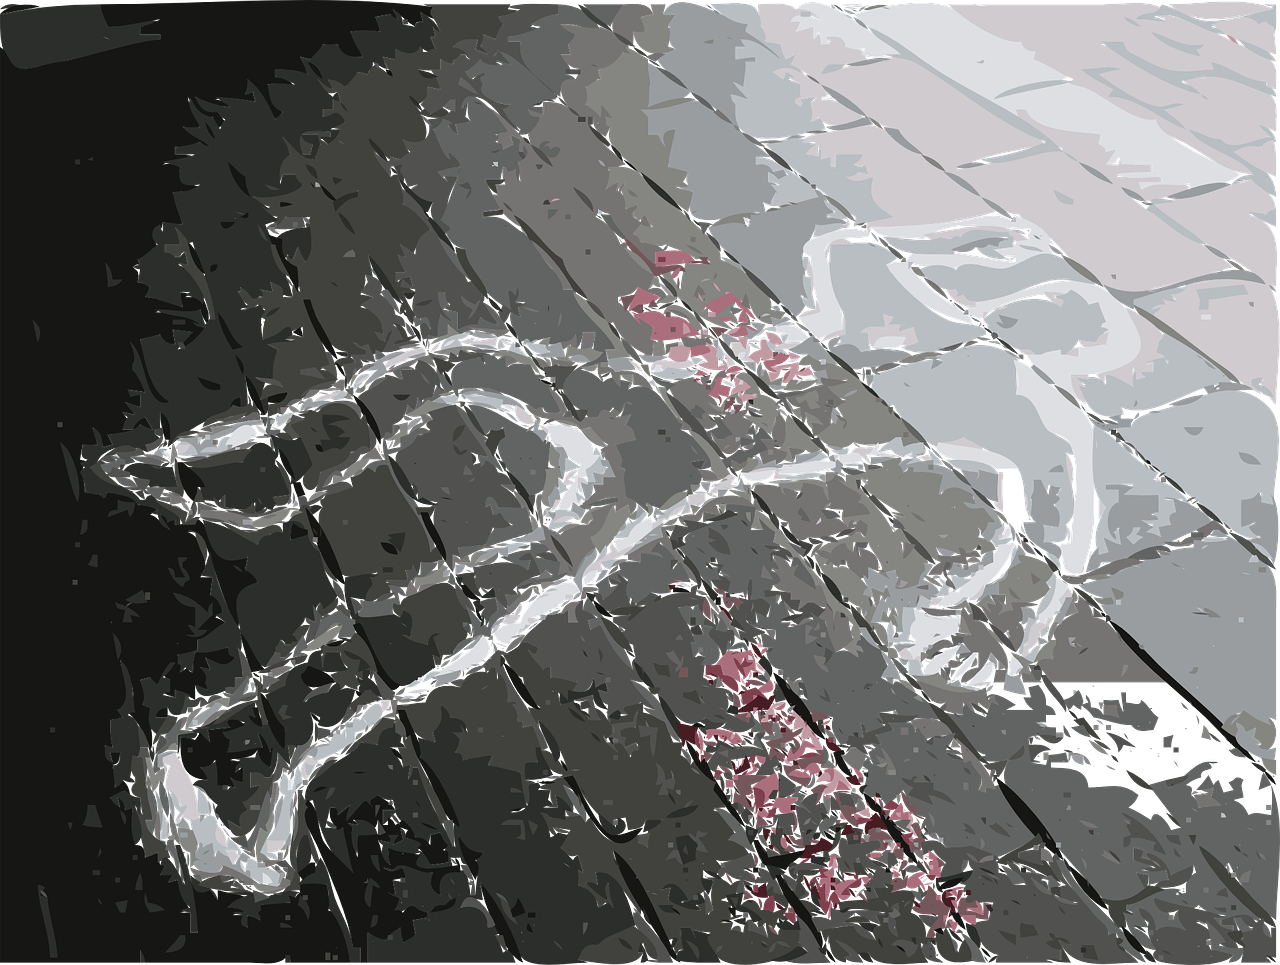 Silueta de un asesinado dibujada en el suelo